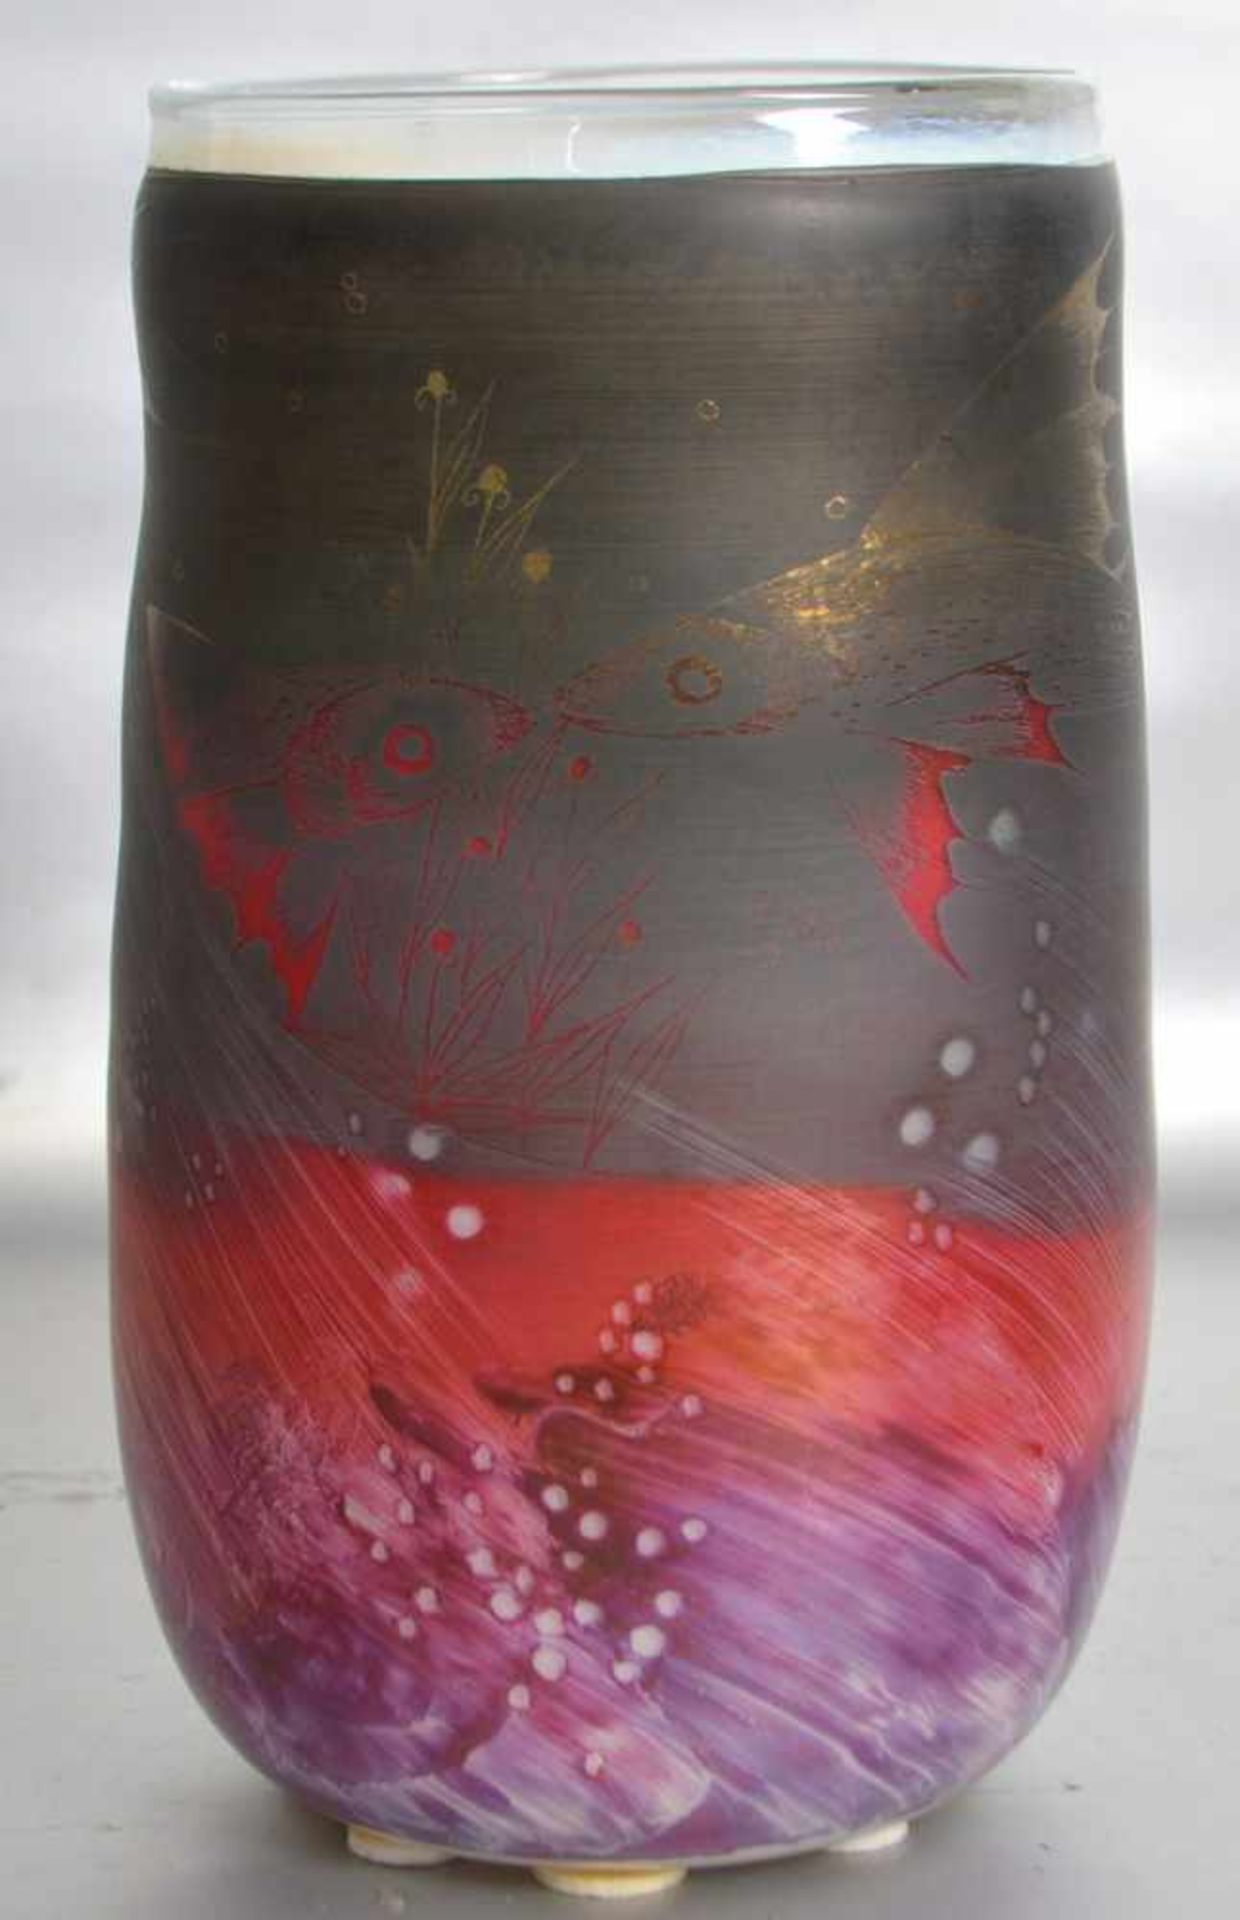 Designervasefarbl. Glas, rund, rot, blau und grau bemalt, mit Fischen und Gräsern, Entwurf Erwin